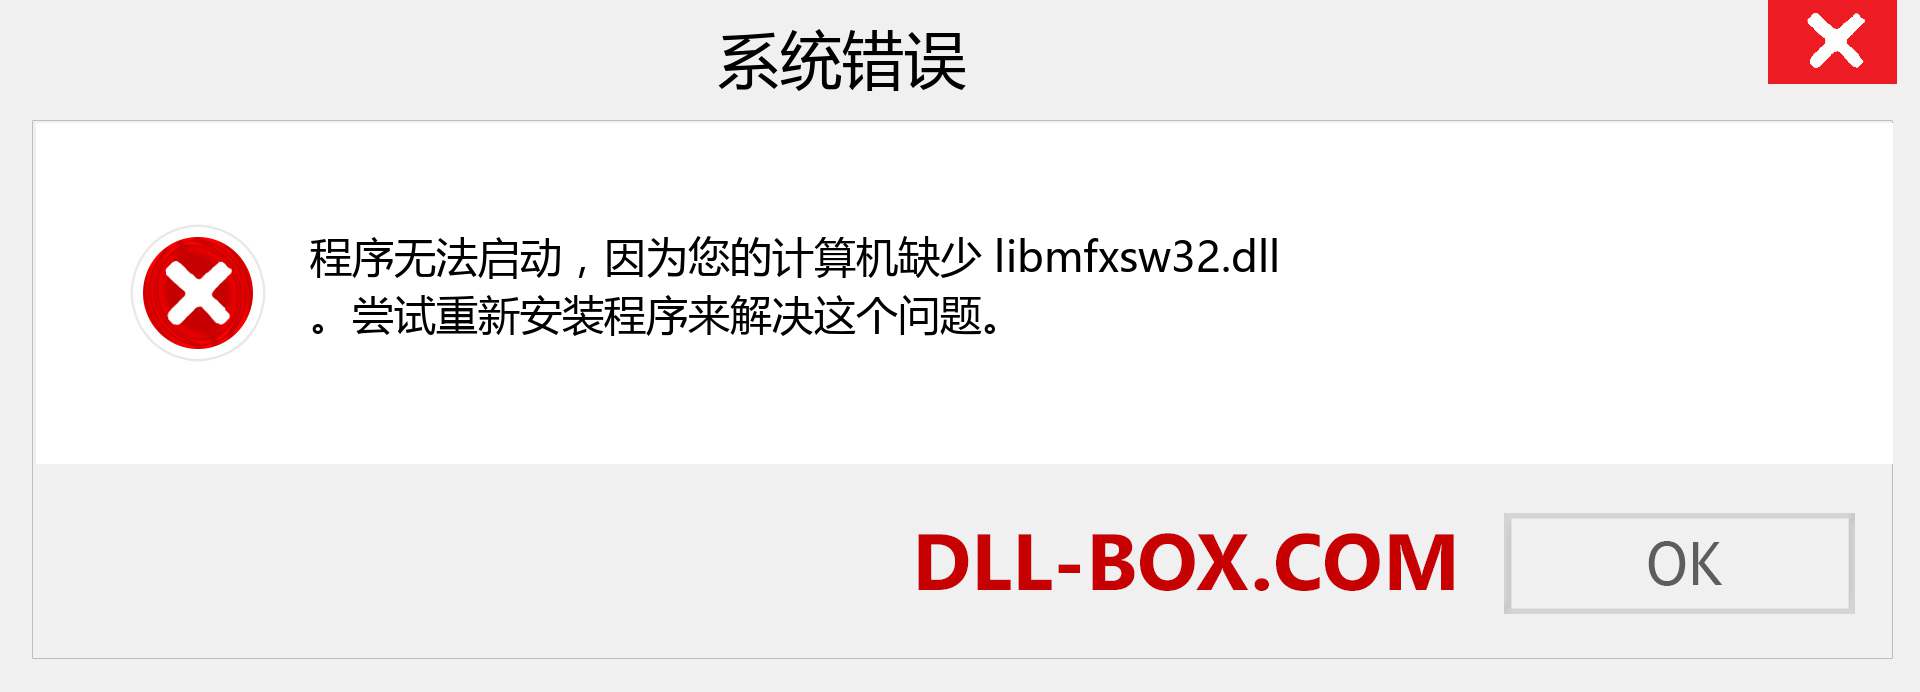 libmfxsw32.dll 文件丢失？。 适用于 Windows 7、8、10 的下载 - 修复 Windows、照片、图像上的 libmfxsw32 dll 丢失错误